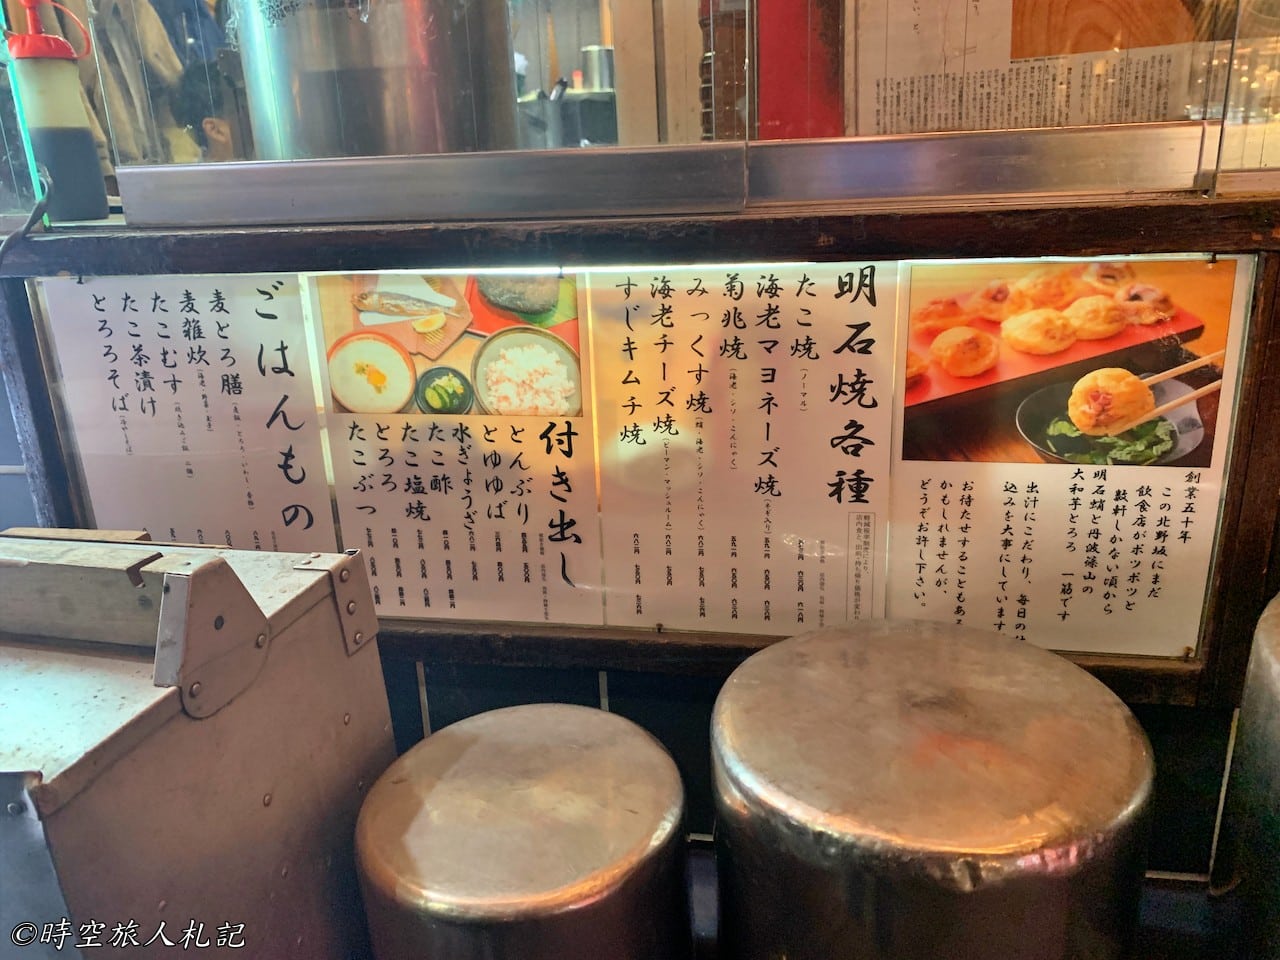 神戶美食,kobe-food,日本神戶美食 30